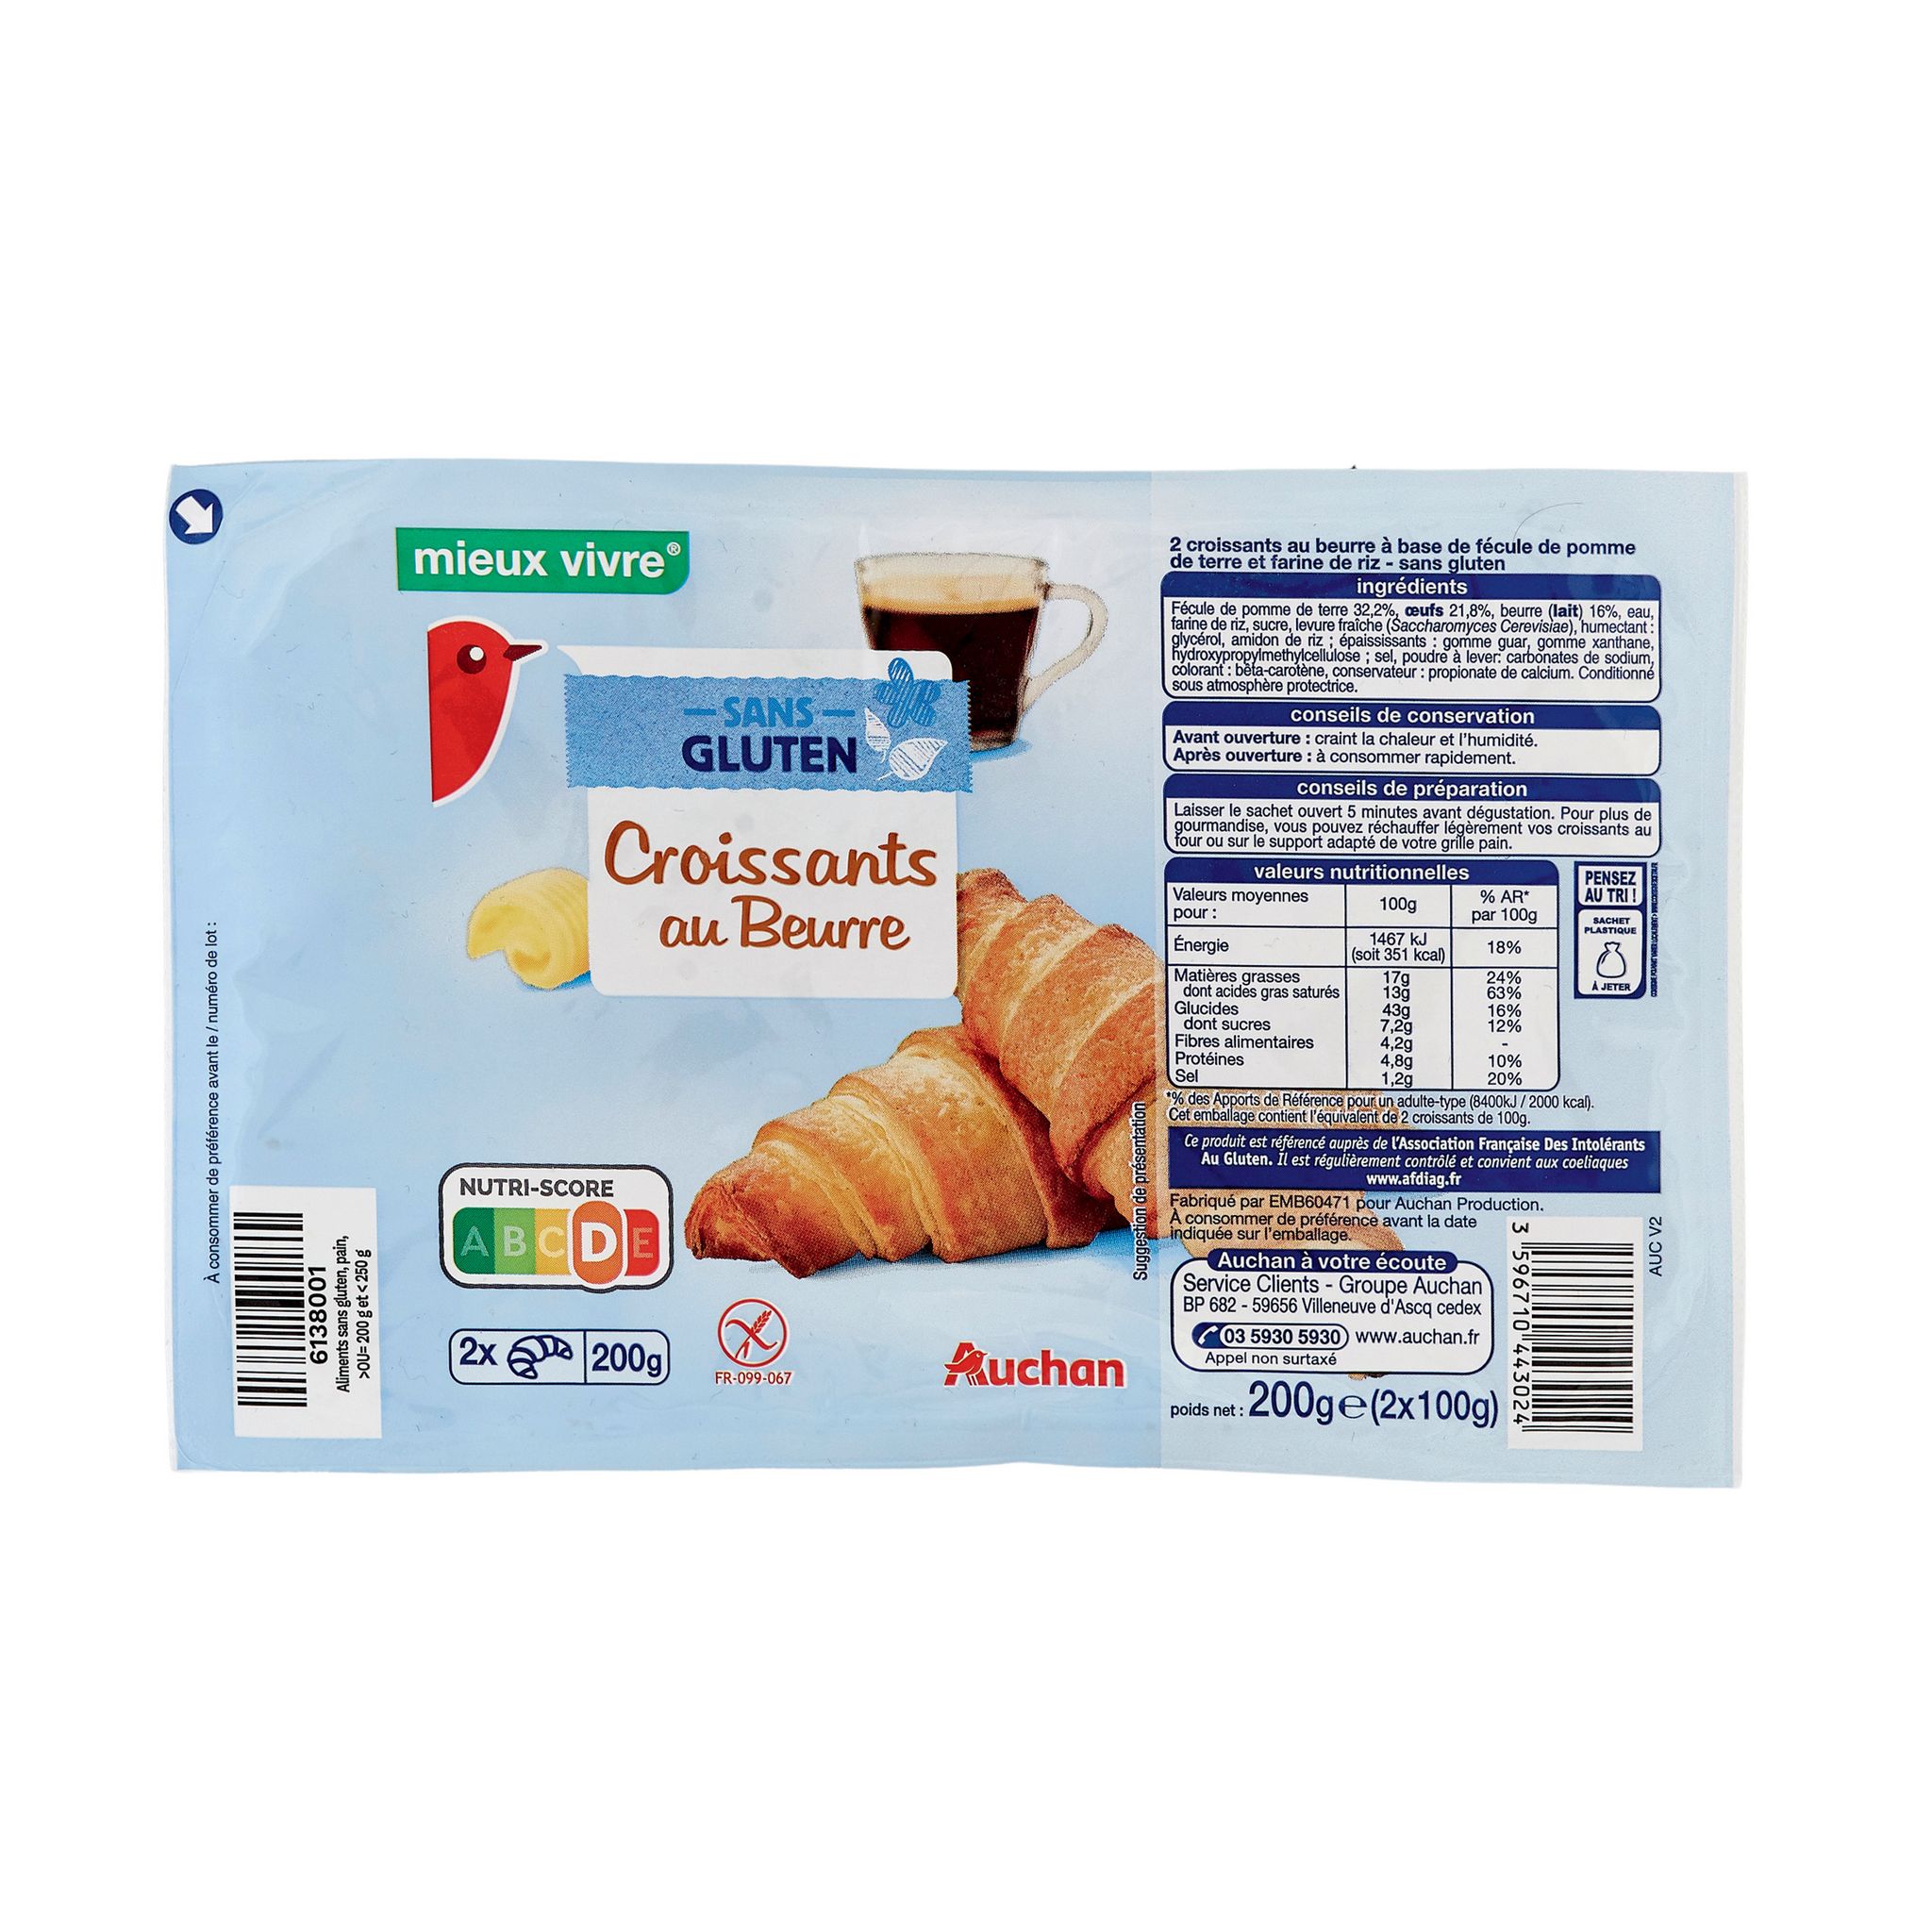 16 pains au chocolat Au levain - Carrefour - 720 g